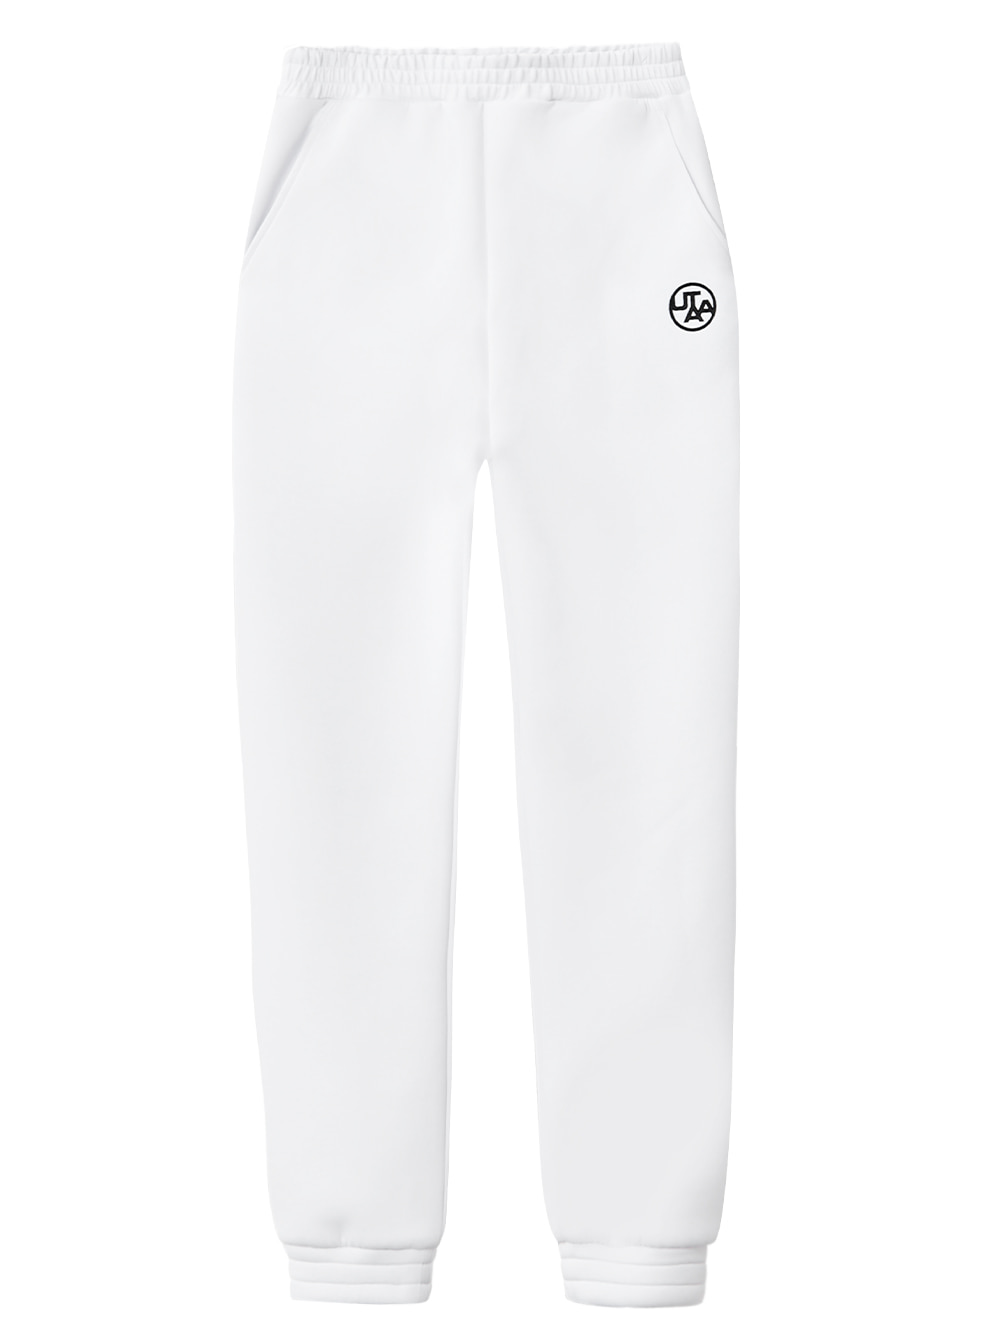 UTAA Symbol Neoprene Basic Jogger Pants : Women&#039;s White (UB3SPF300WH)